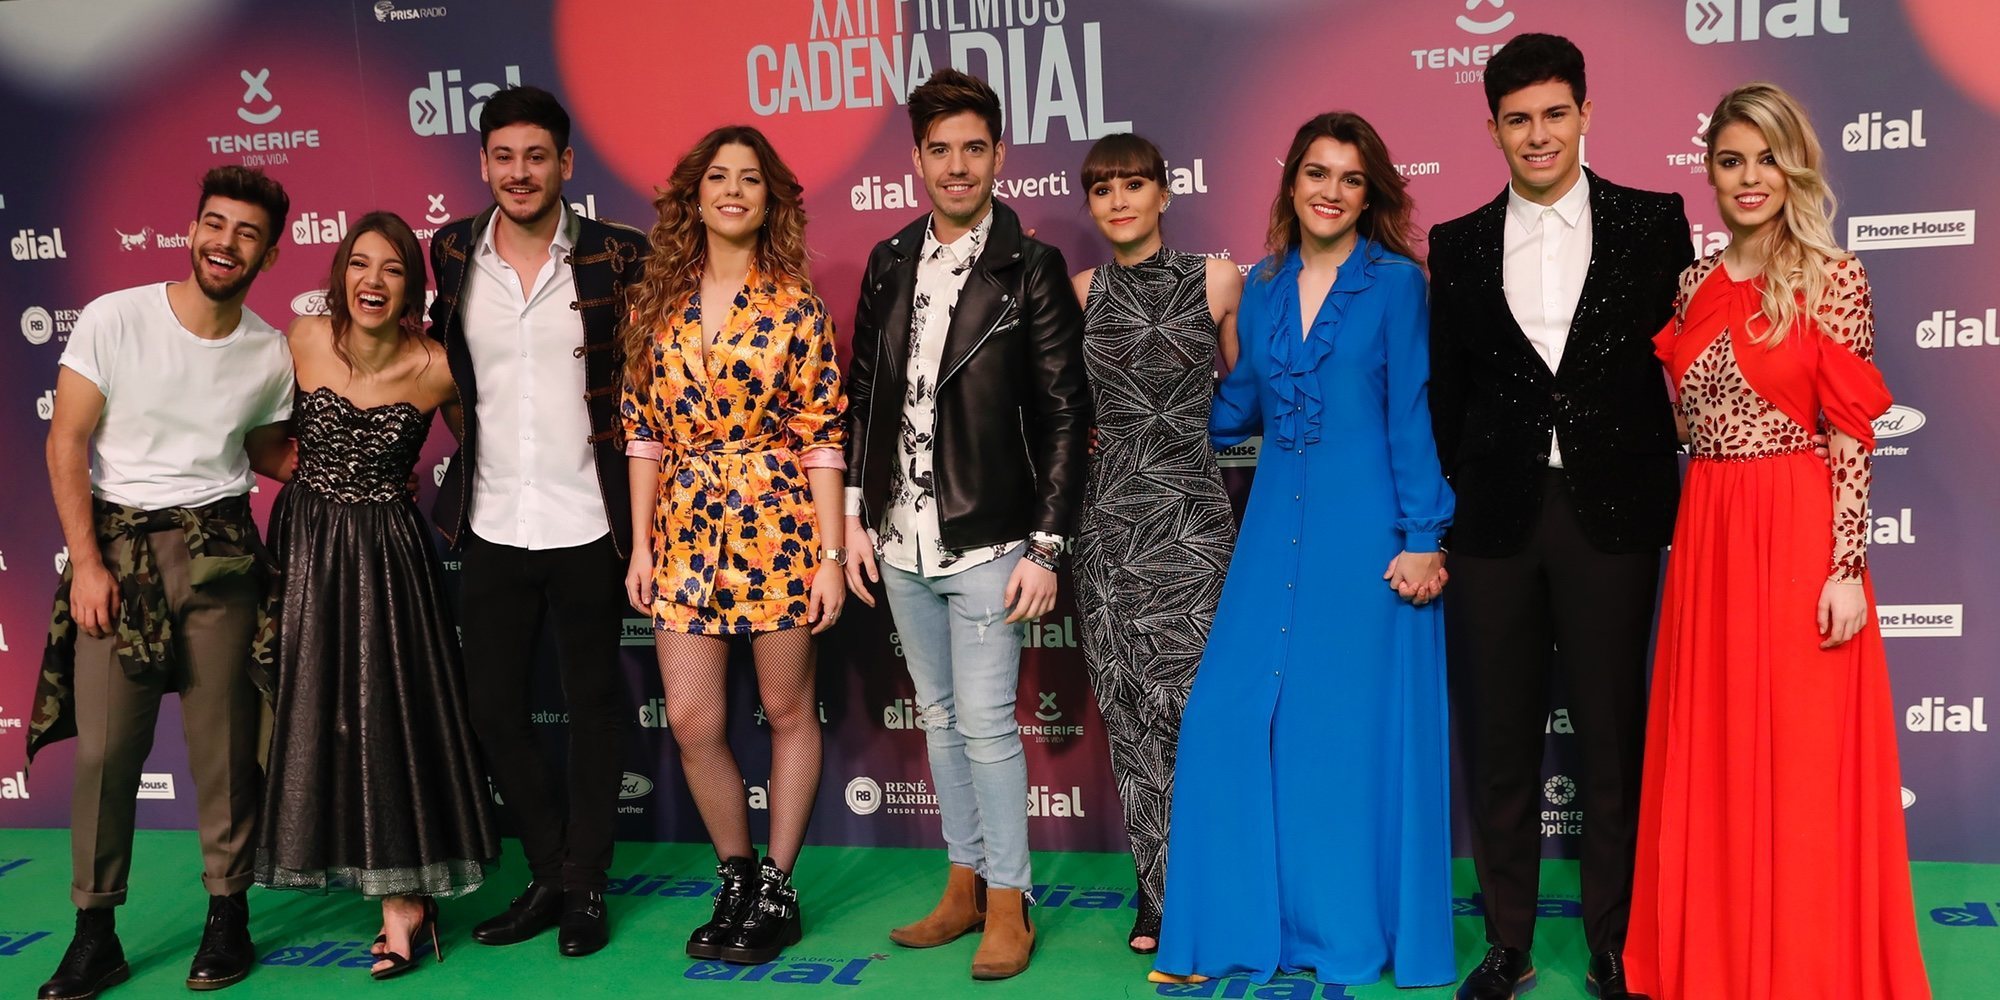 Los concursantes de 'OT 2017' acaparan la atención en los Premios Cadena Dial 2018